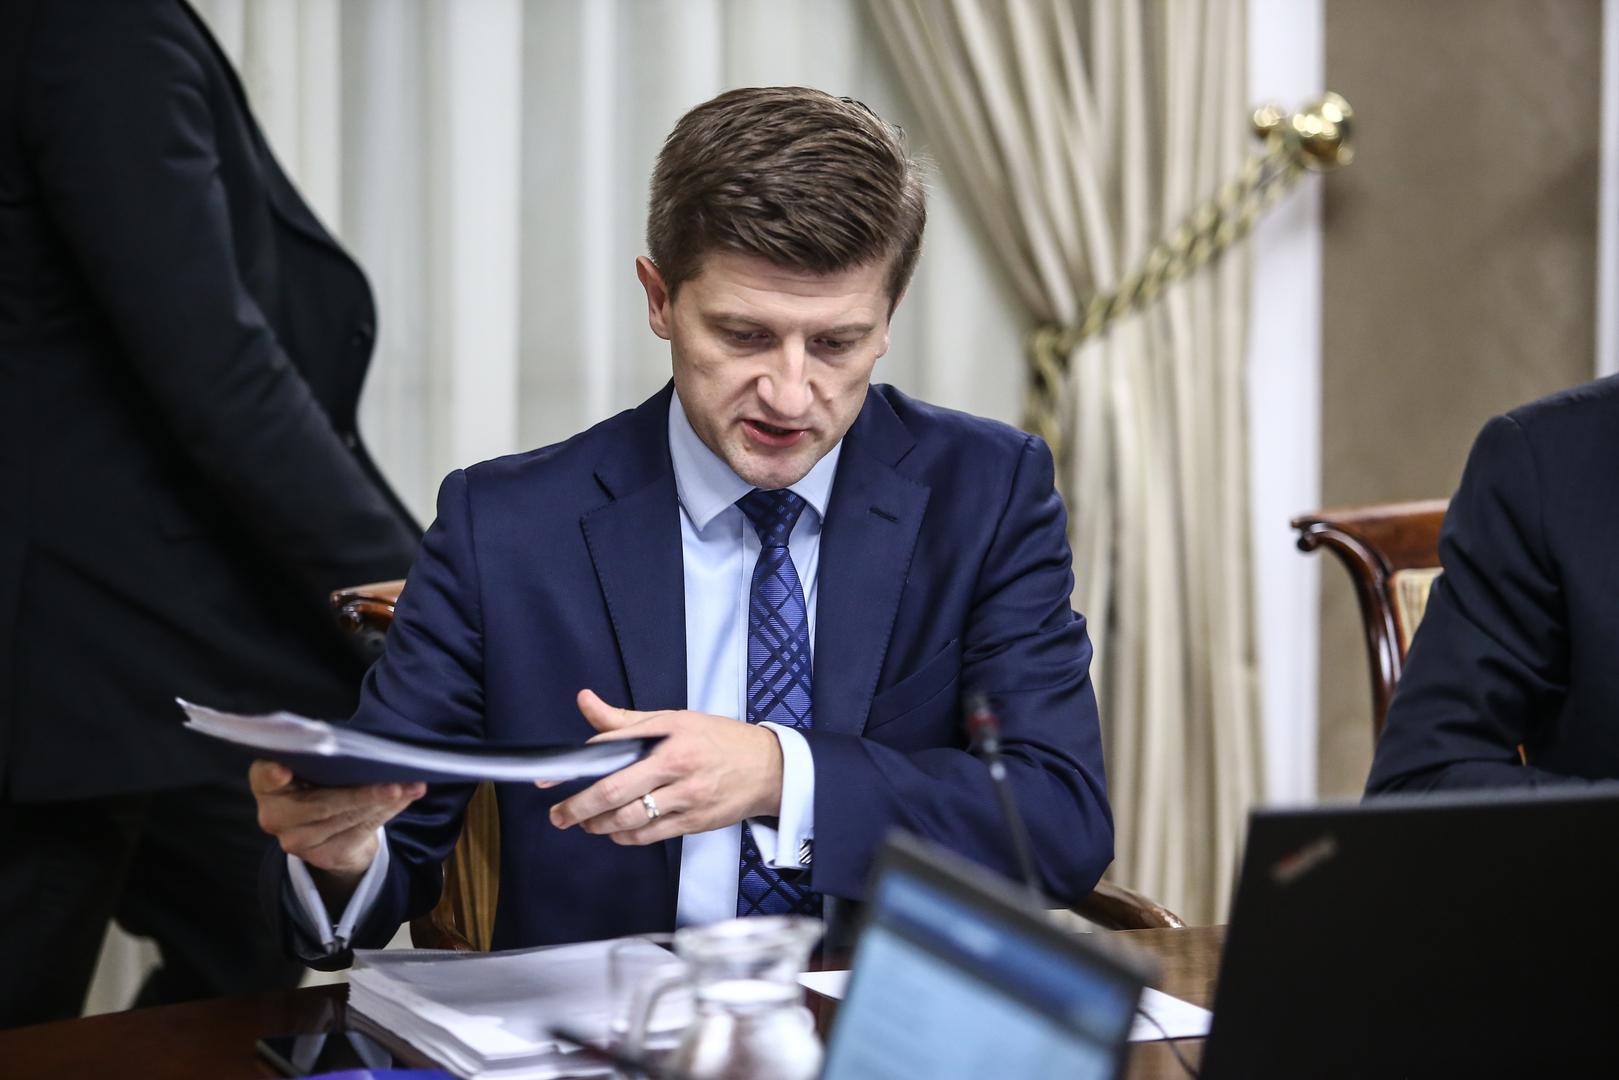 Ministar Zdravko Marić apelira: Dugove treba odmah platiti da izbjegnemo dodatne troškove